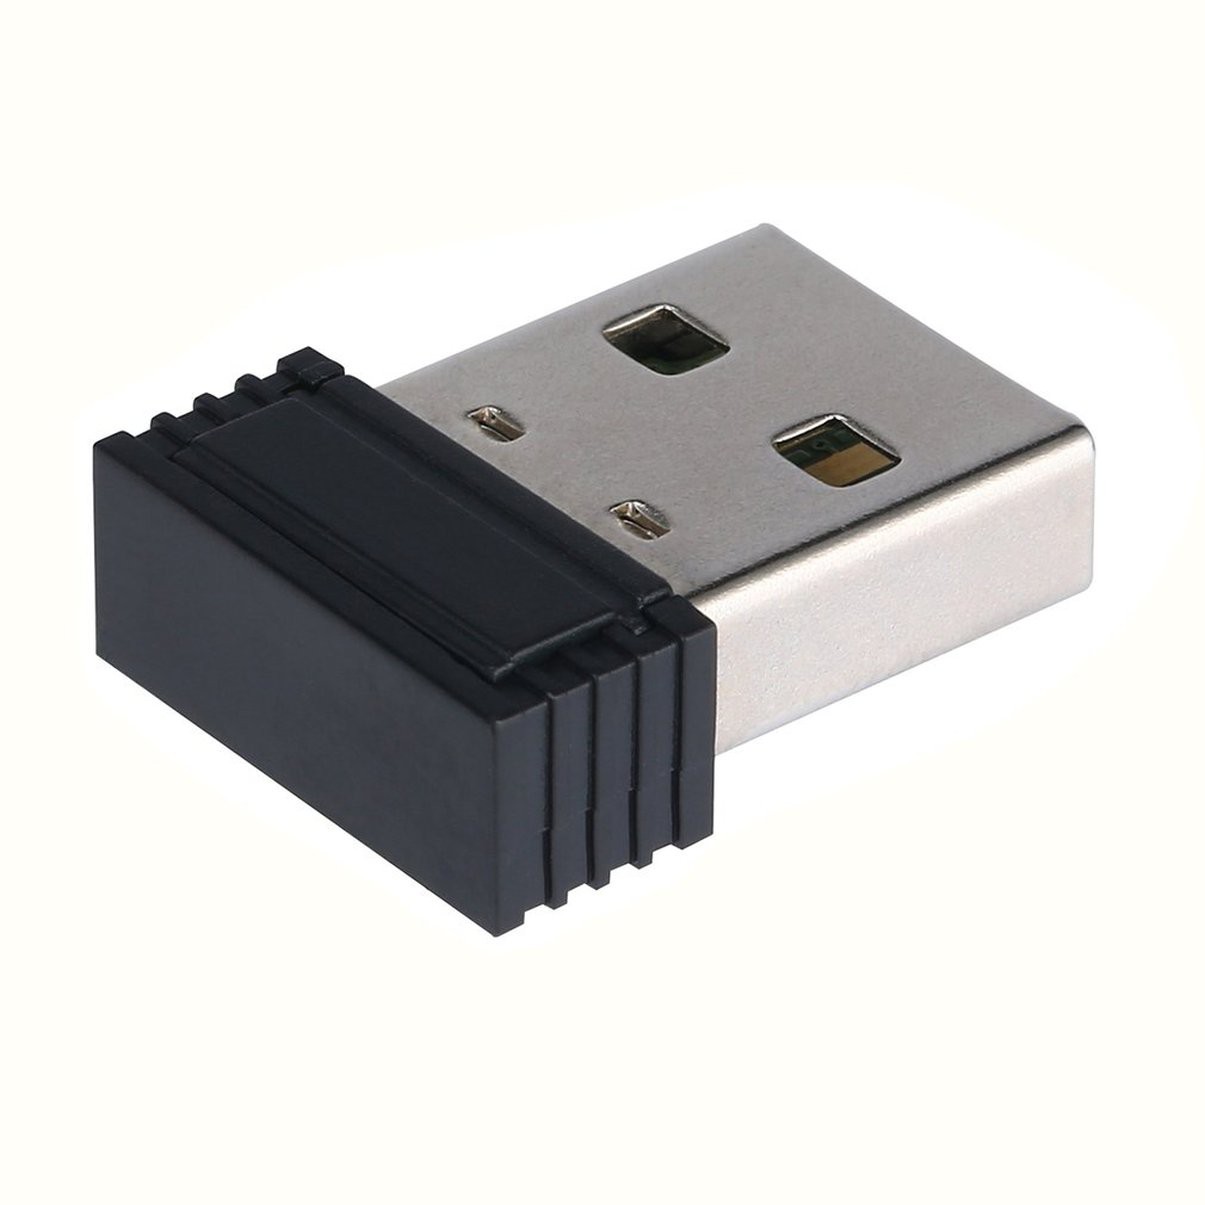 150M Mini USB WiFi Wireless Network LAN Card 802.11n/g/b USB Receivers Adapter